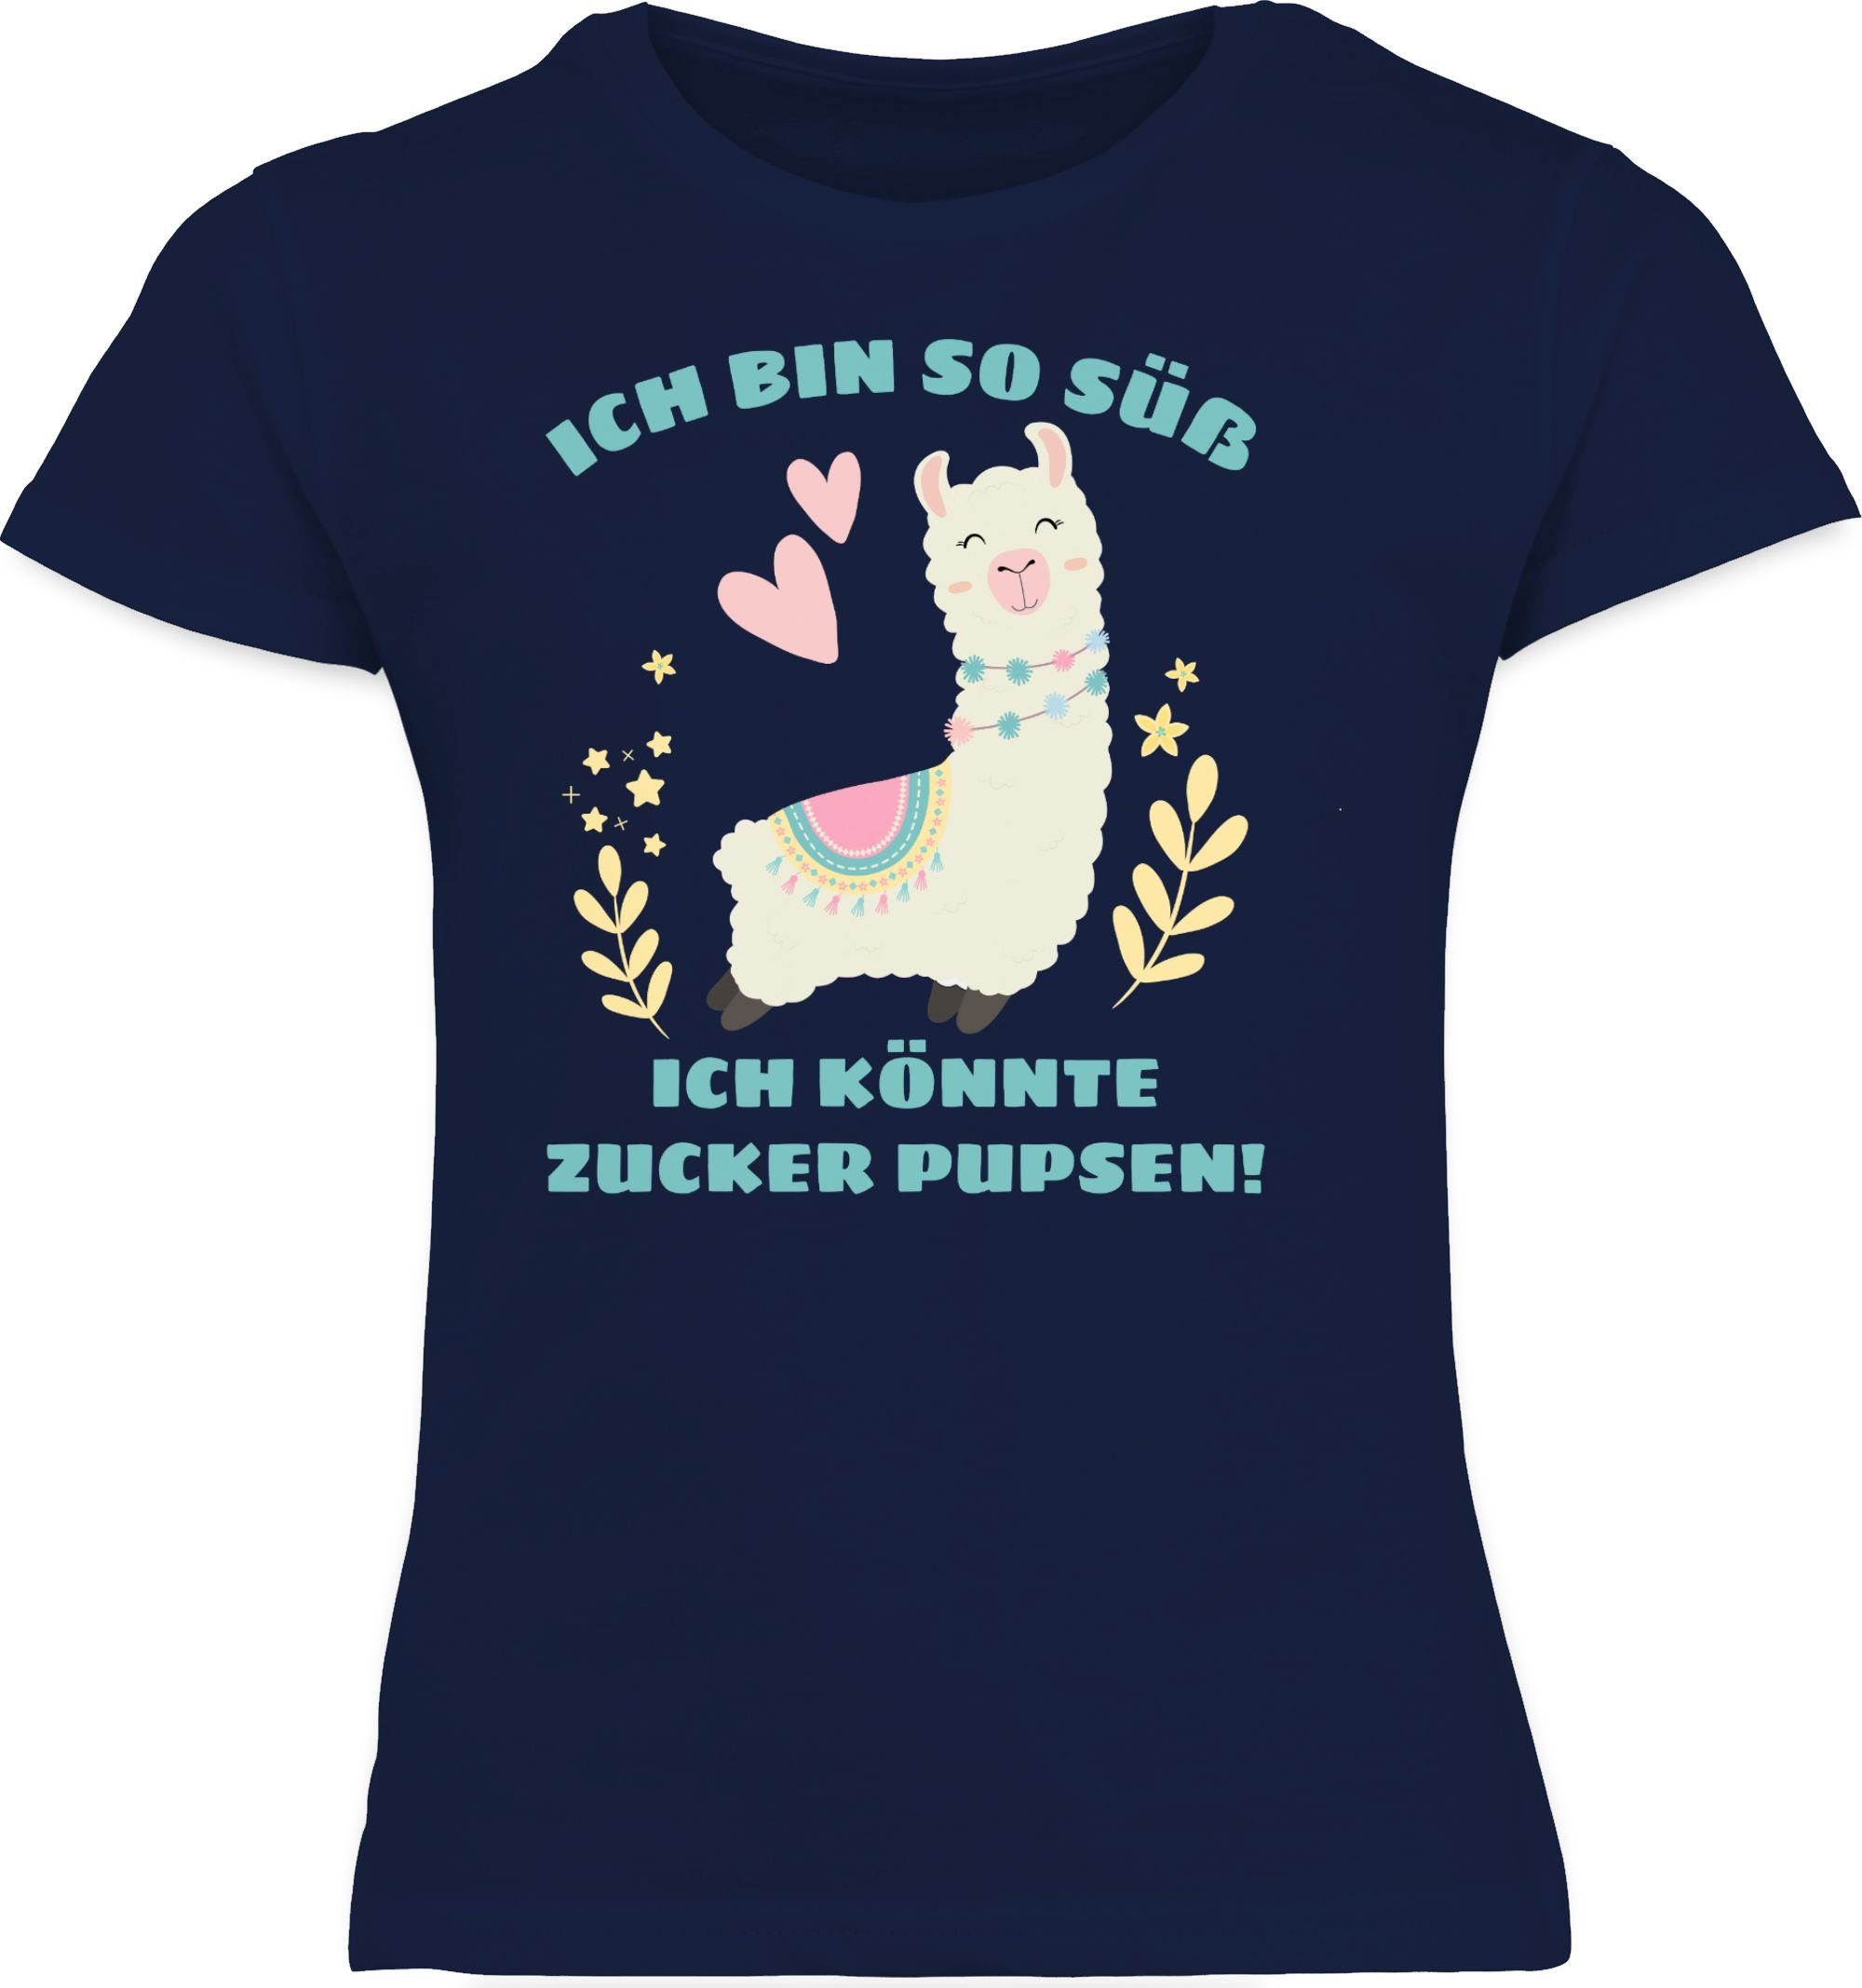 Ich bin T-Shirt Kinder Pupsen so Sprüche Shirtracer 2 könnte ich Dunkelblau süß Zucker Lama Statement